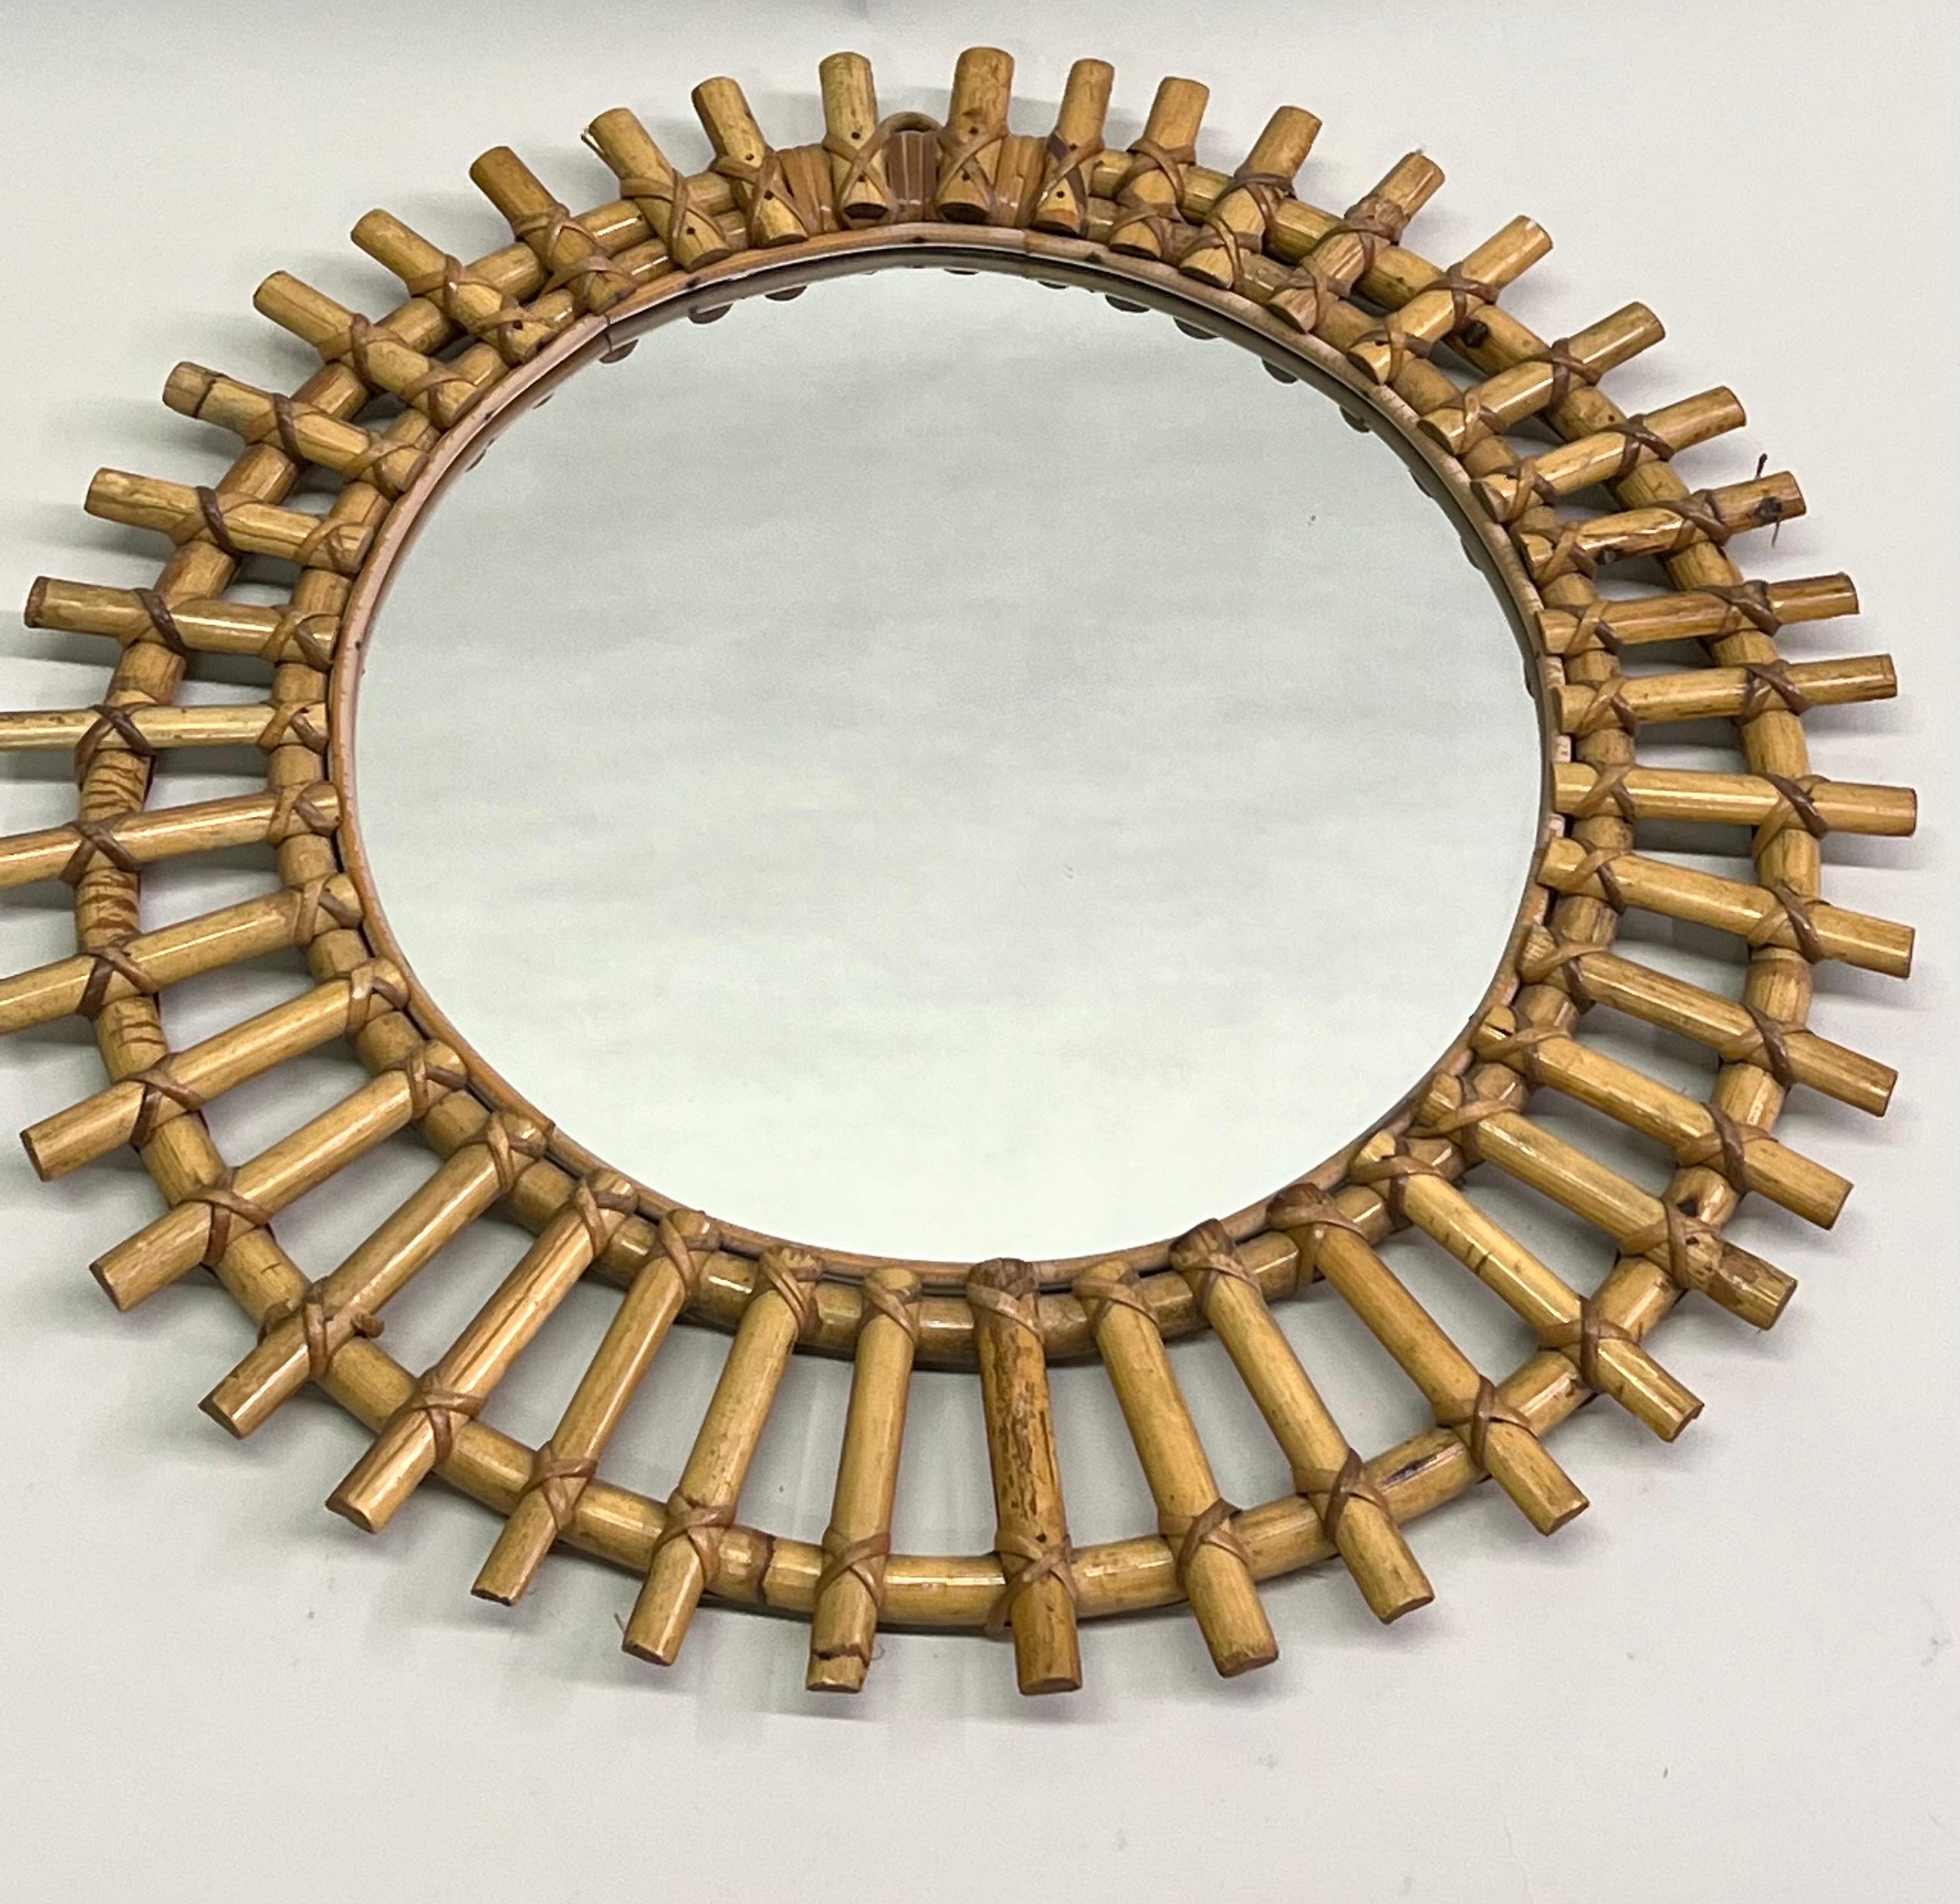 Ein eleganter französischer Midcentury Modern-Spiegel aus Bambus und Rattan. Der Wandspiegel hat eine seltene Halbmondform und weist Rattan-Sonnenstrahlen auf, die strahlenförmig von der zentralen Spiegelplatte ausgehen. Das Stück bringt die moderne